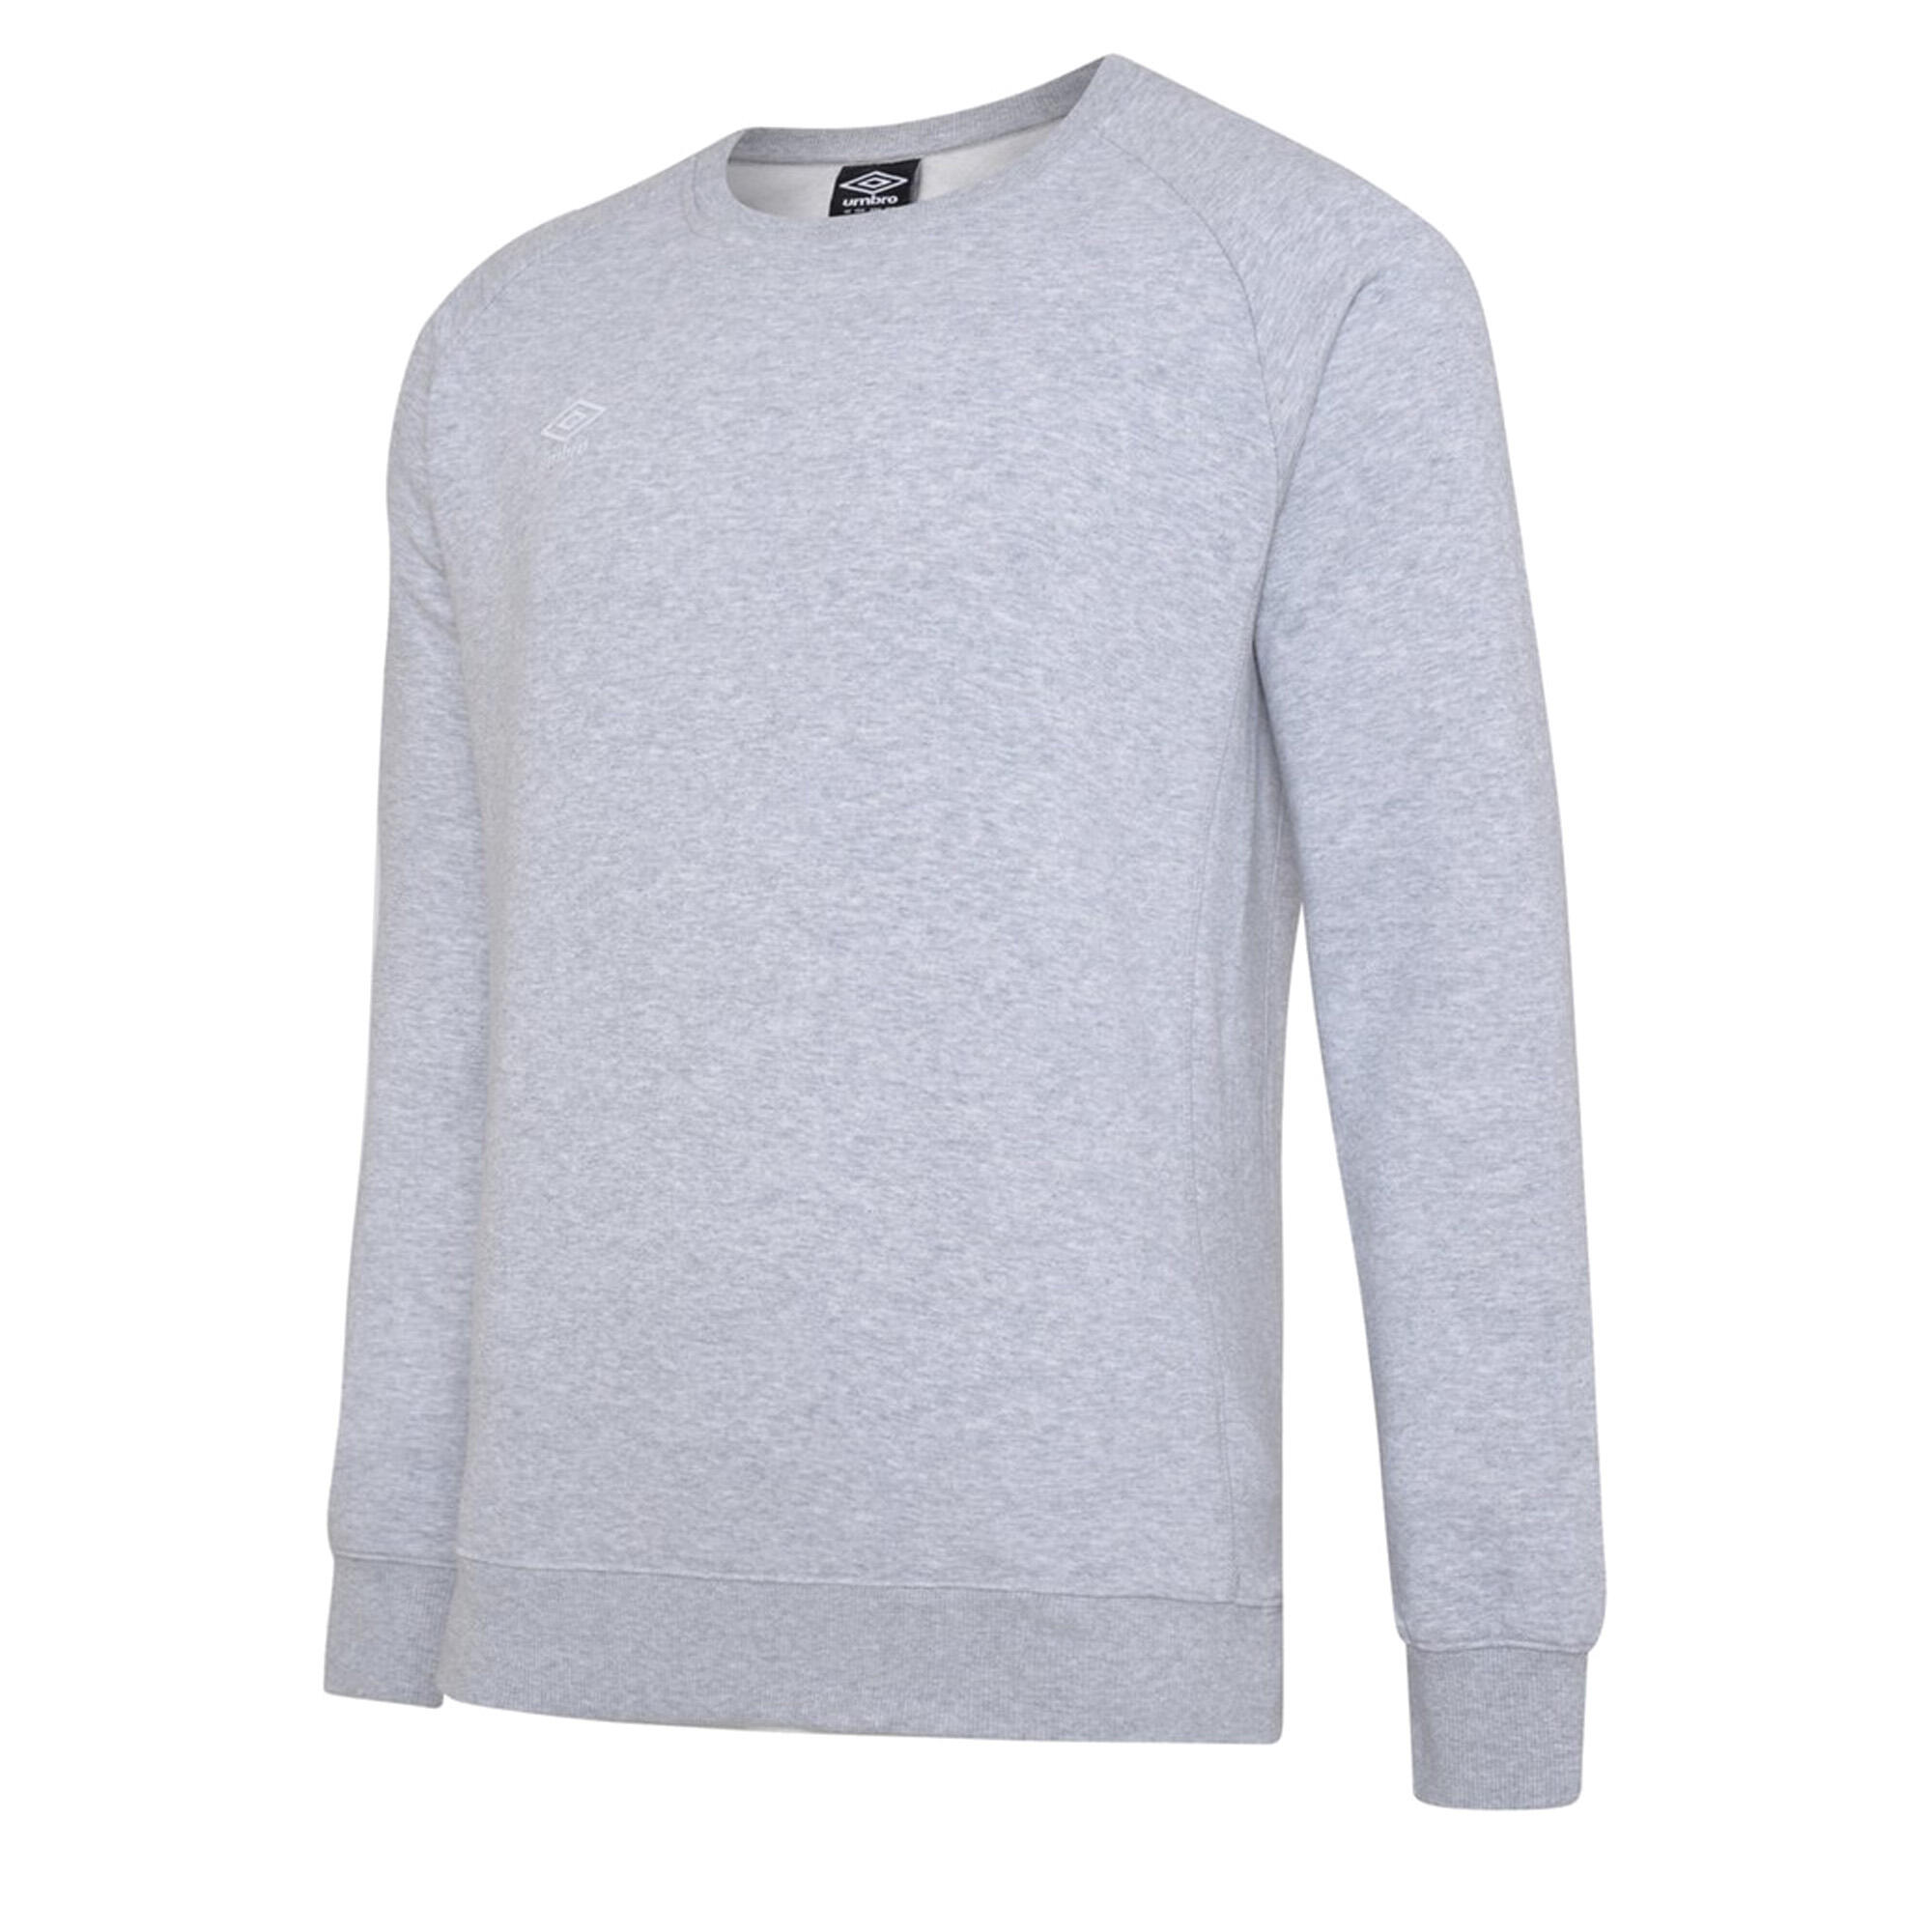 Womens/Ladies Club Leisure Sweatshirt (Grey Marl/White) 1/3